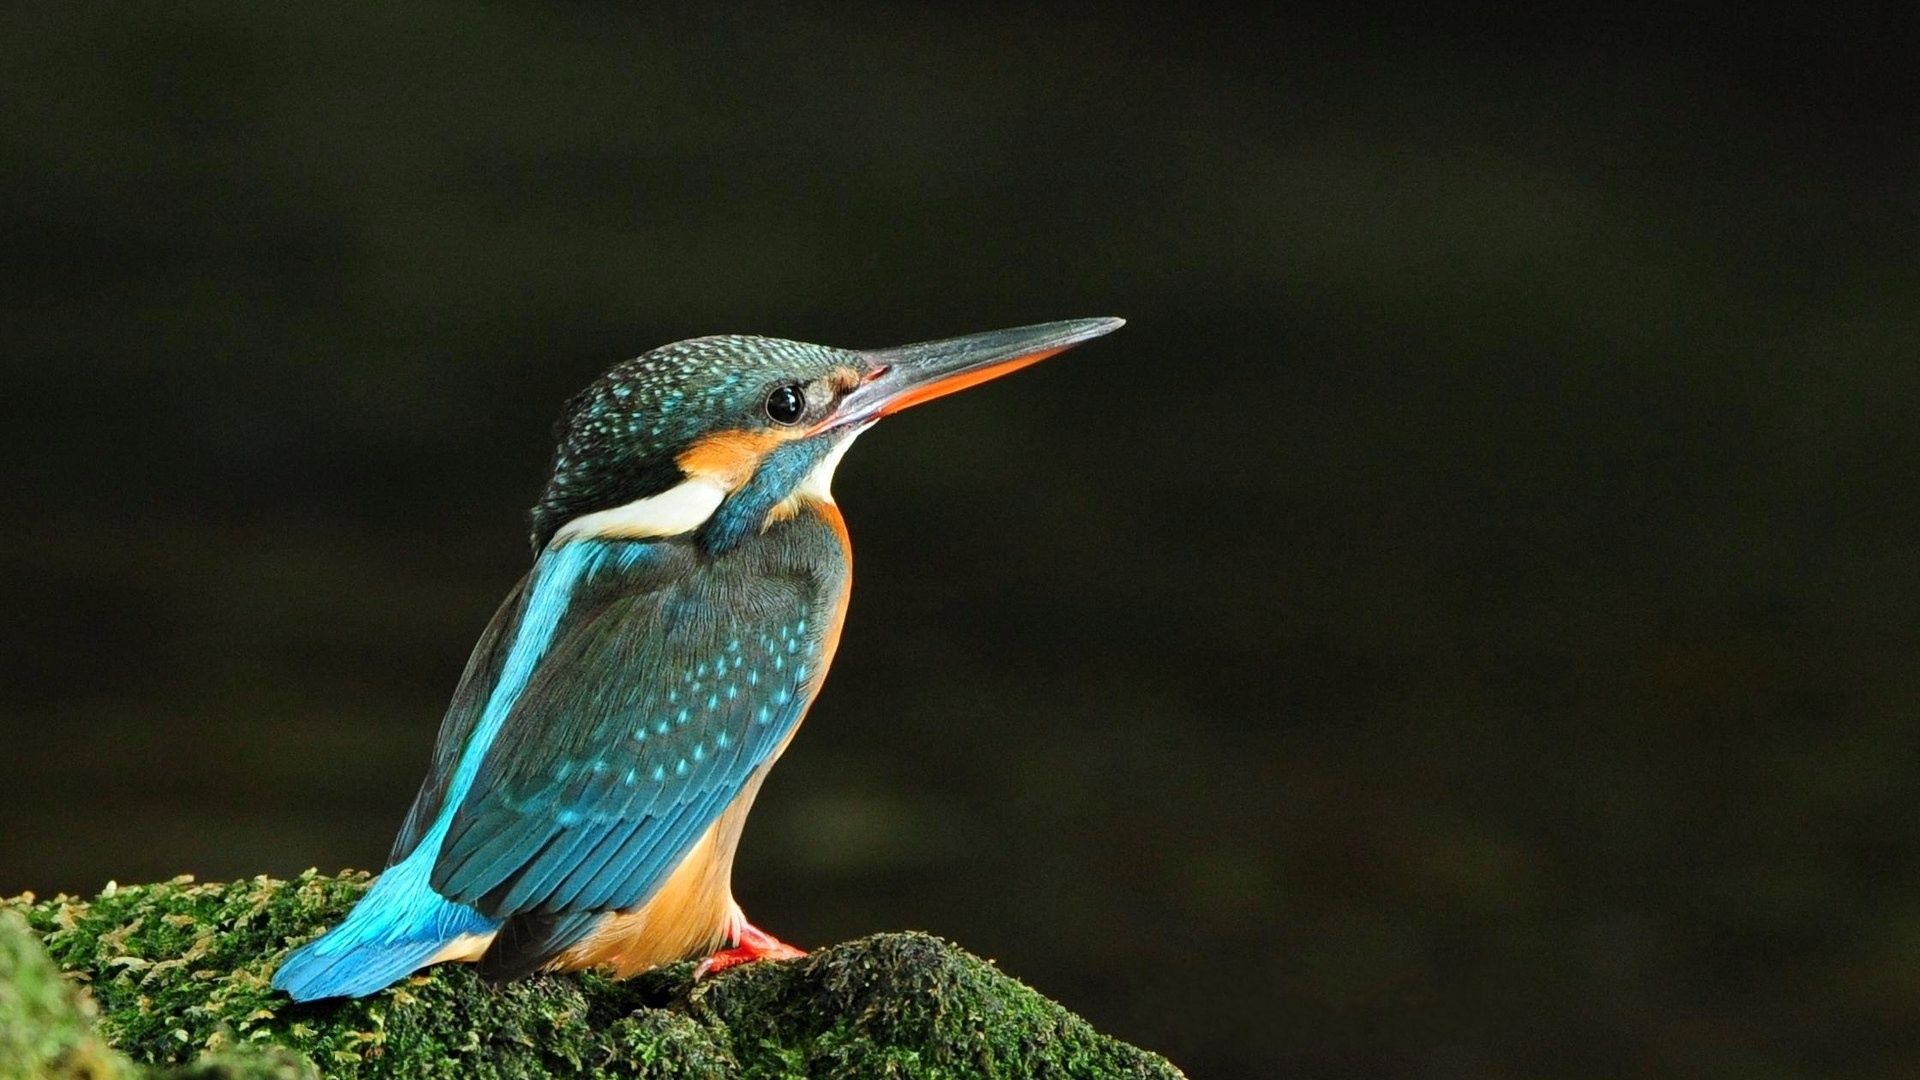 A Bird With A Blue Beak